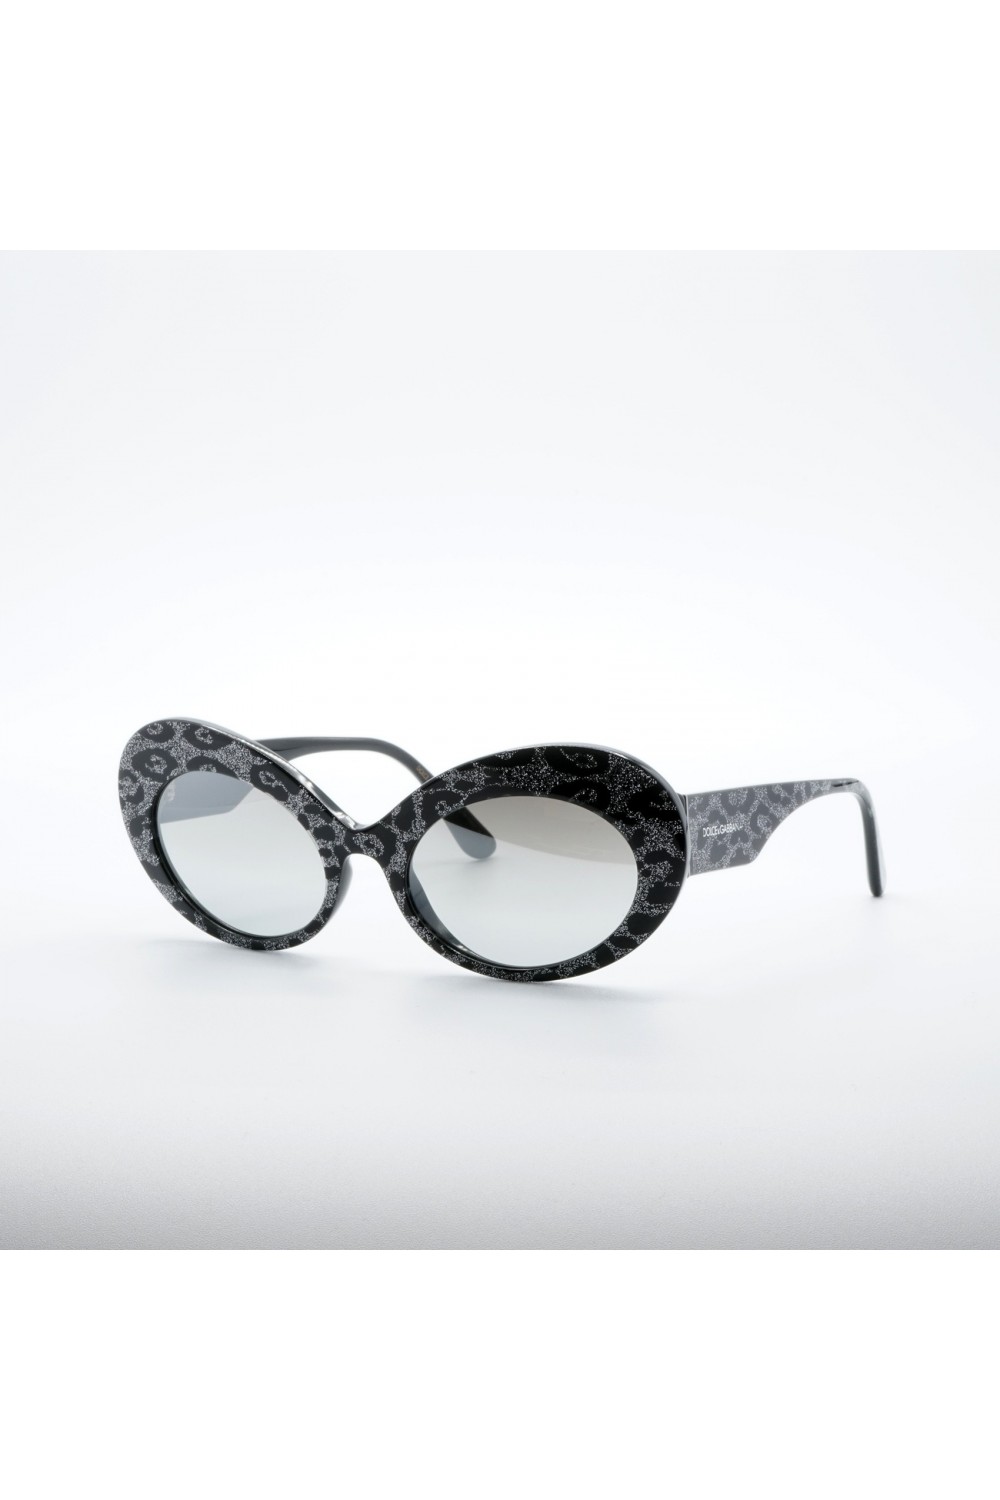 Dolce&Gabbana - Occhiali da sole in celluloide ovali per donna grigio - DG4345